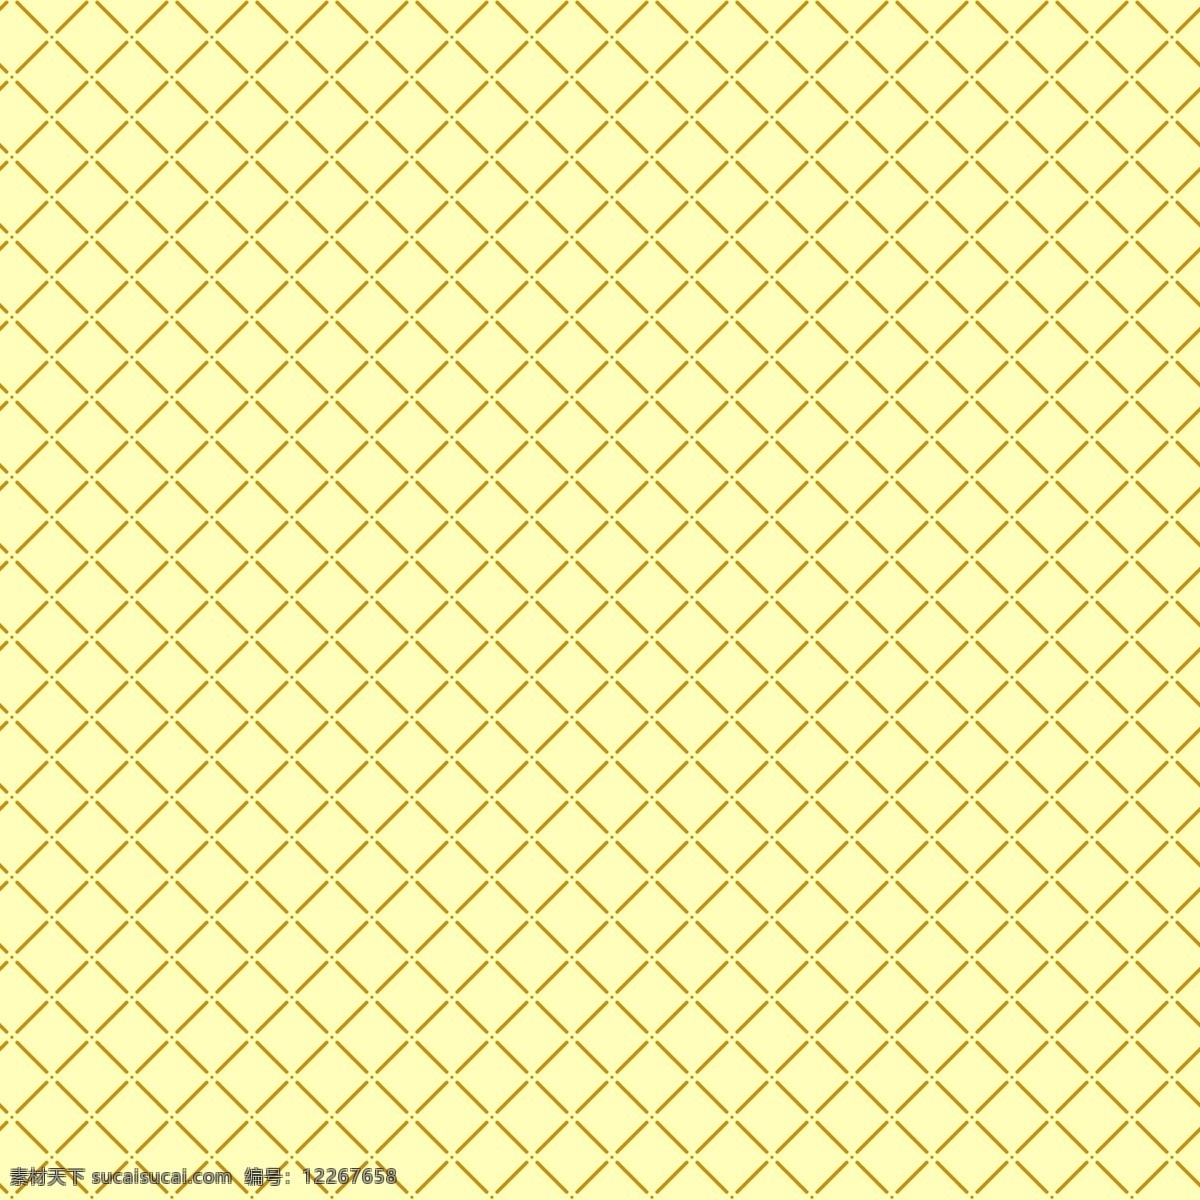 淡黄色底纹 底纹 古典 印花 包装纸 黄色 背景底纹 底纹边框 bmp